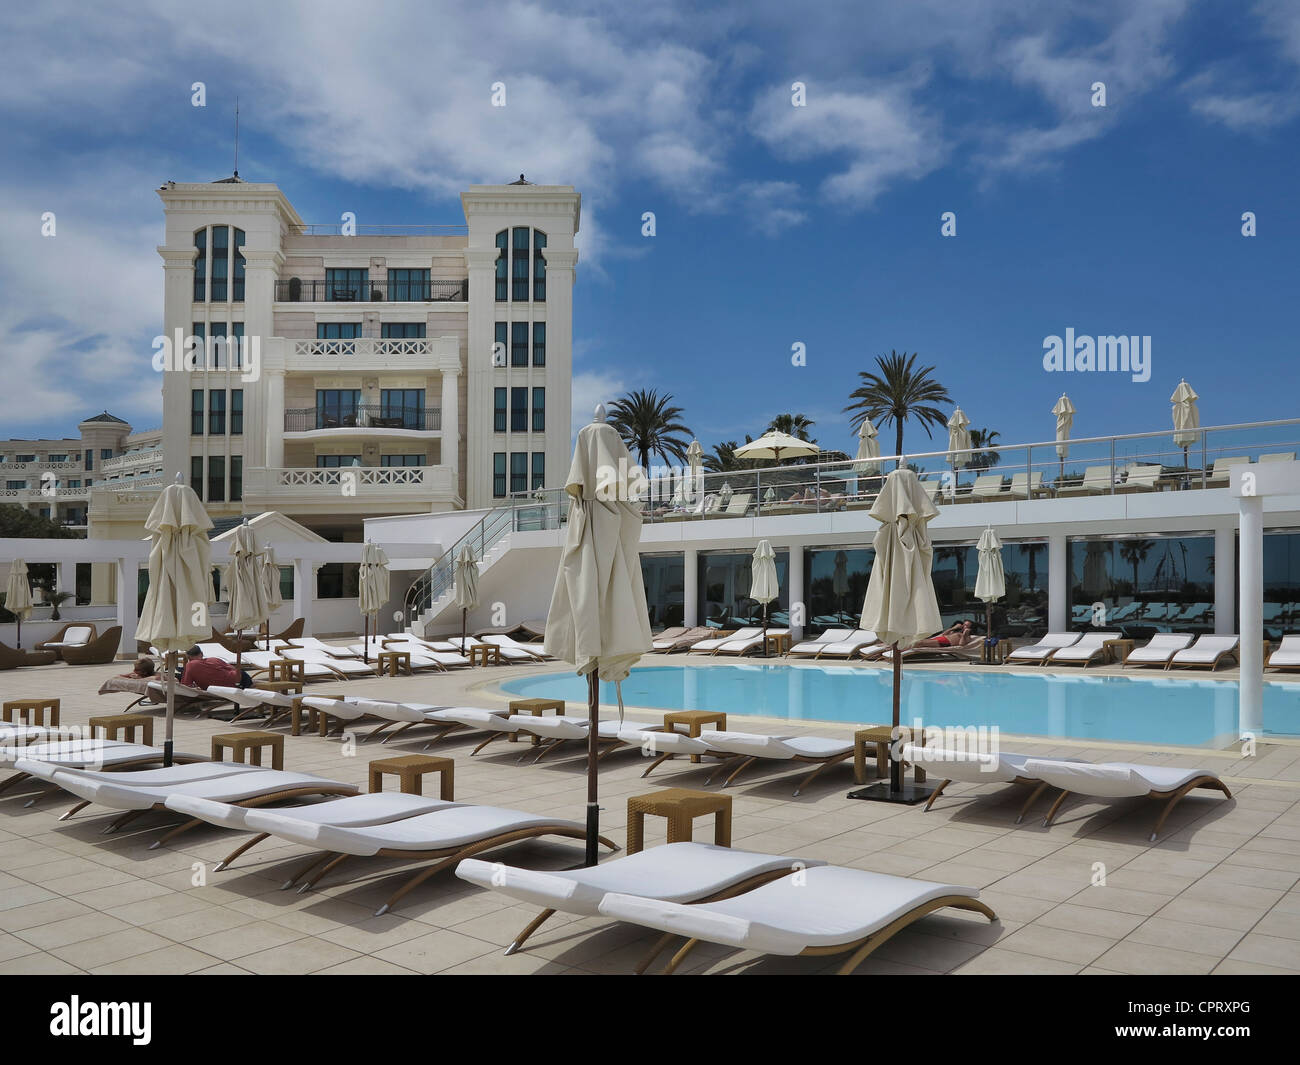 Hotel balneario las arenas fotografías e imágenes de alta resolución - Alamy